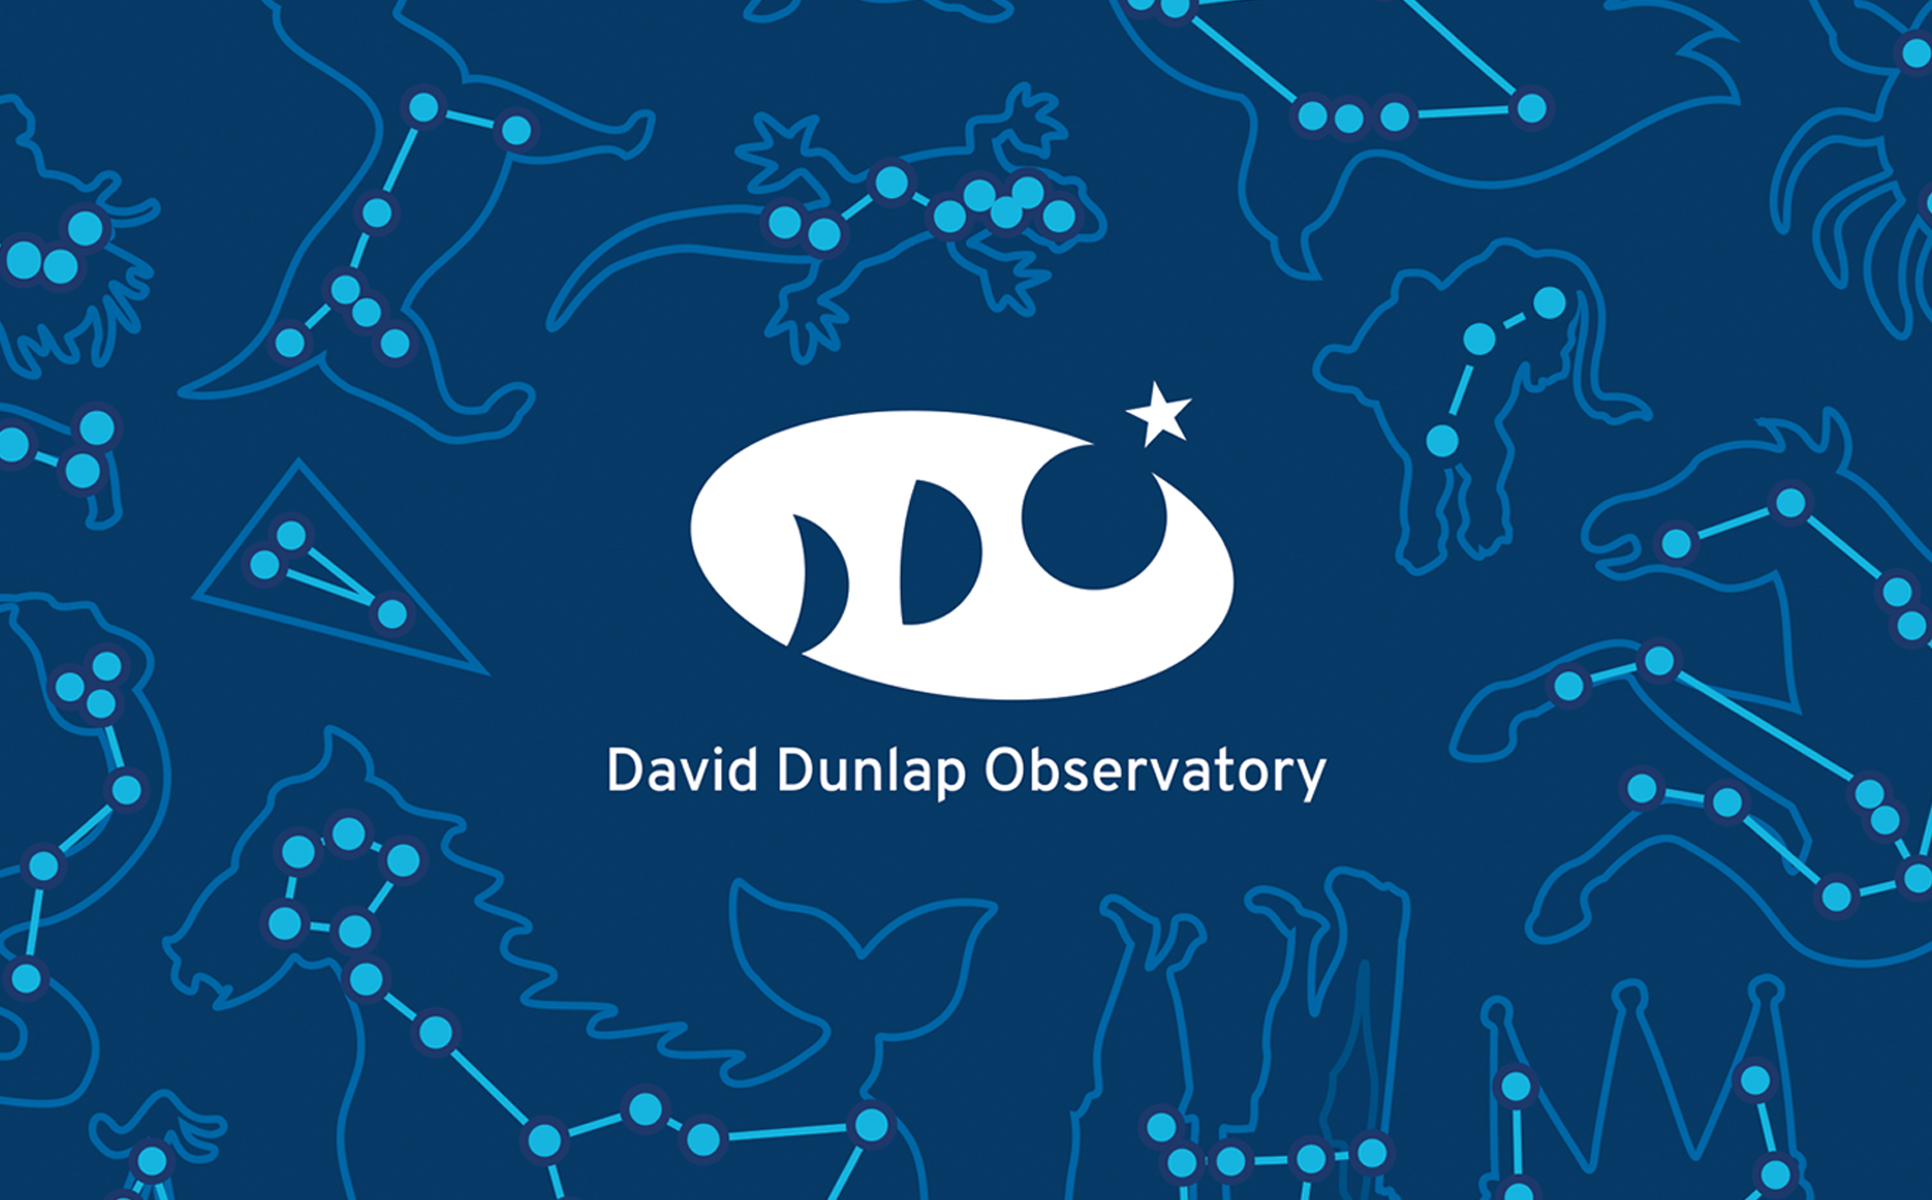 david dunlap observatory redesigned logo